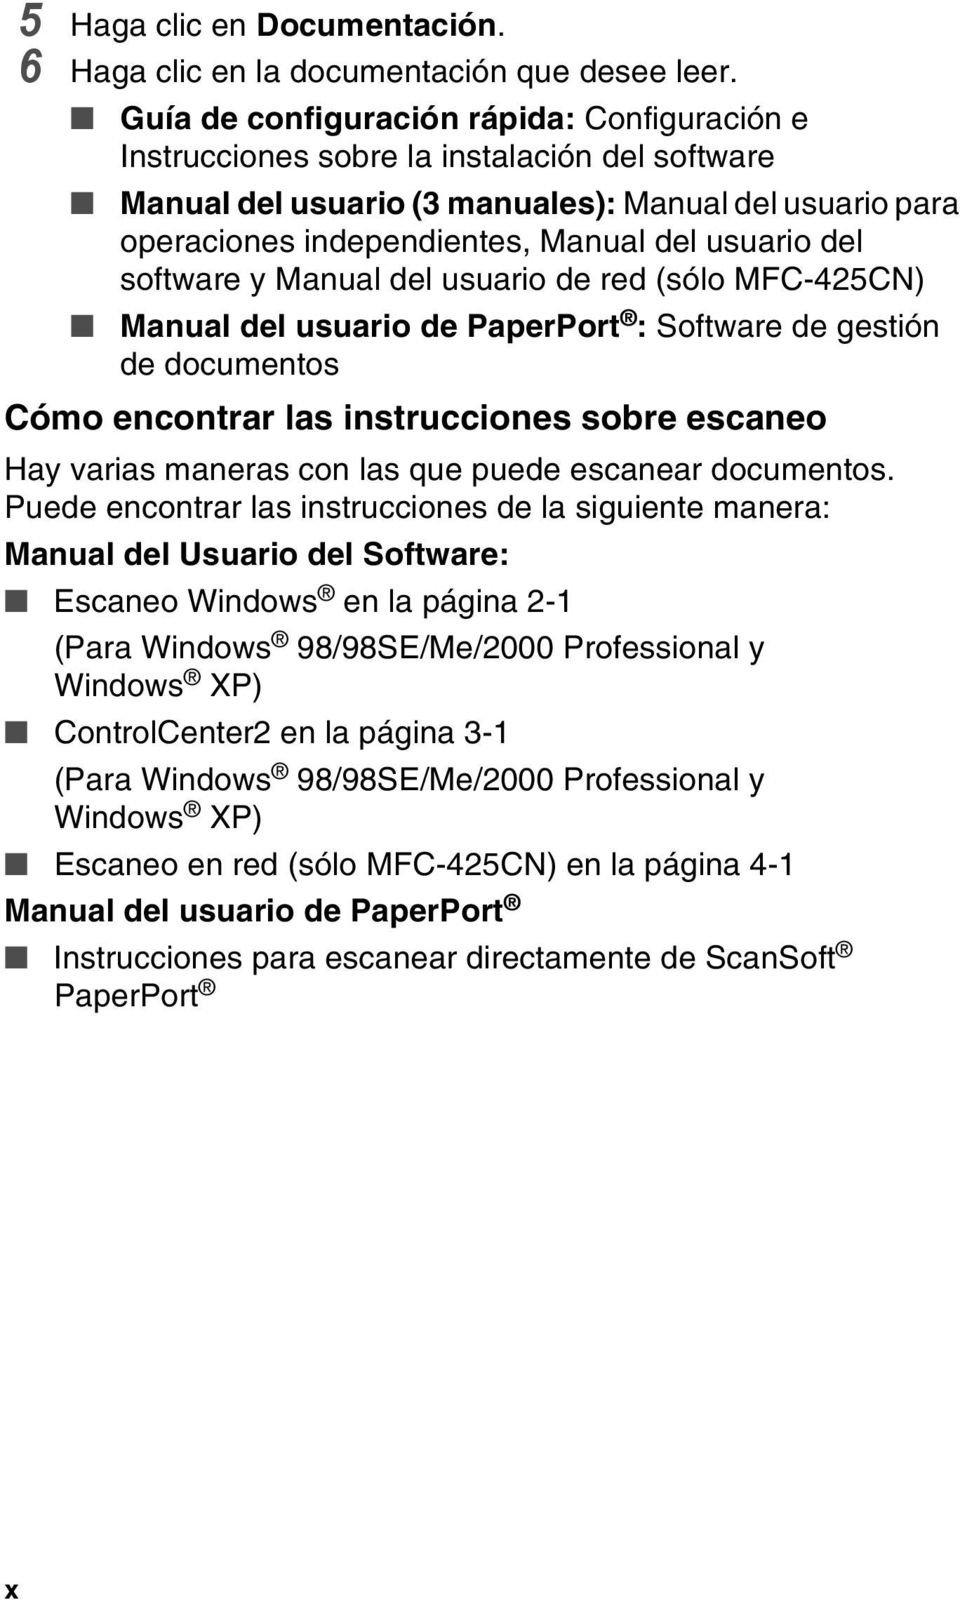 del software y Manual del usuario de red (sólo MFC-425CN) Manual del usuario de PaperPort : Software de gestión de documentos Cómo encontrar las instrucciones sobre escaneo Hay varias maneras con las